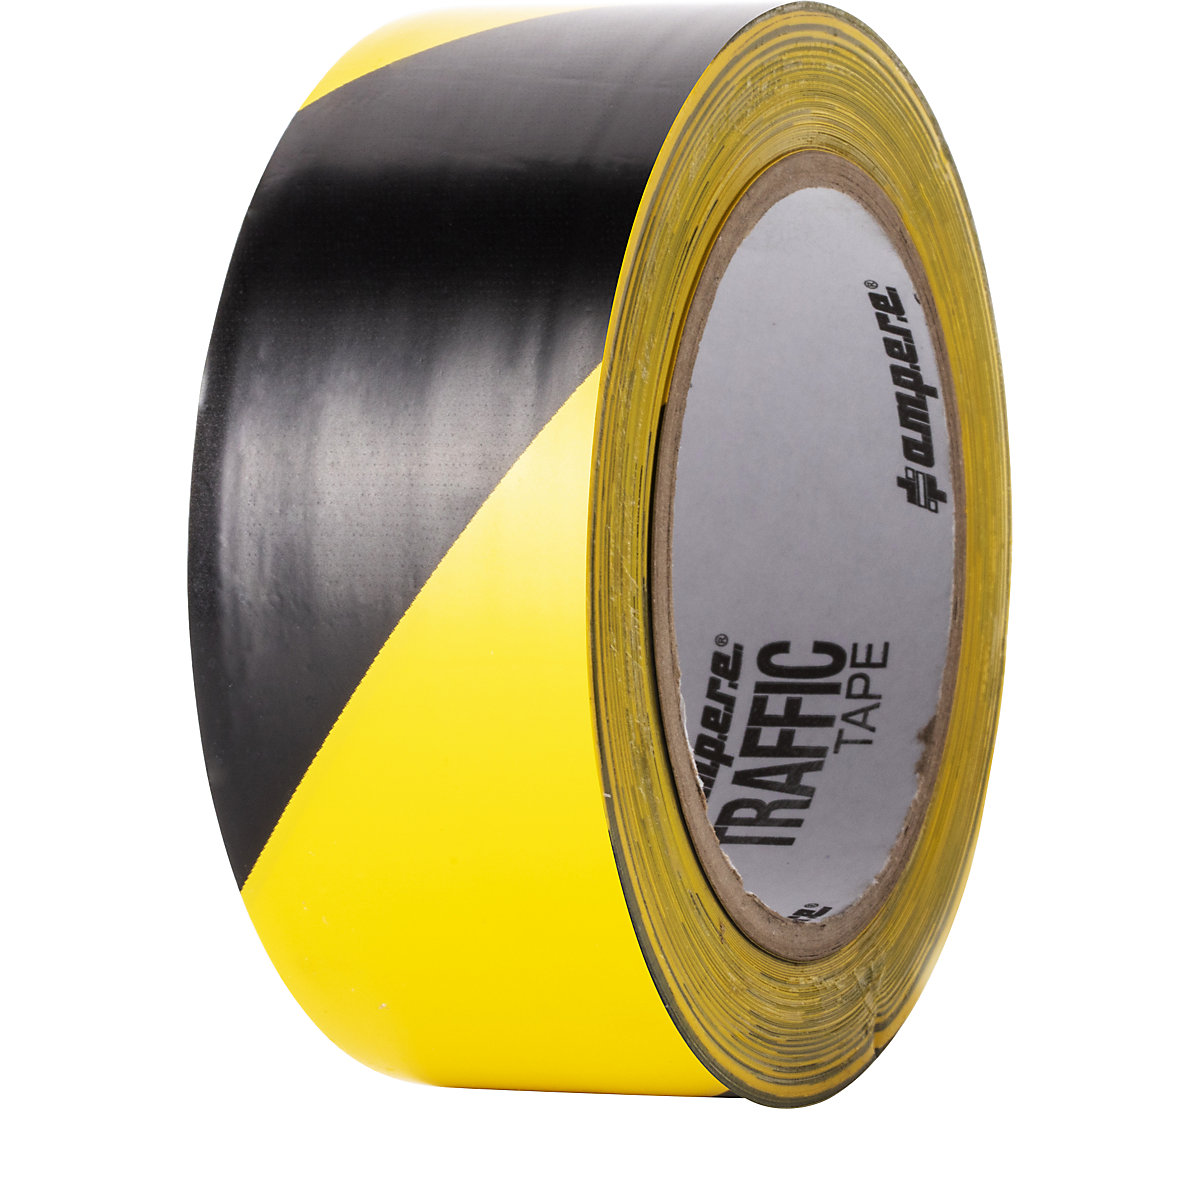 Podlahová označovacia páska – Ampere, šírka 50 mm, žlto/čierna-4